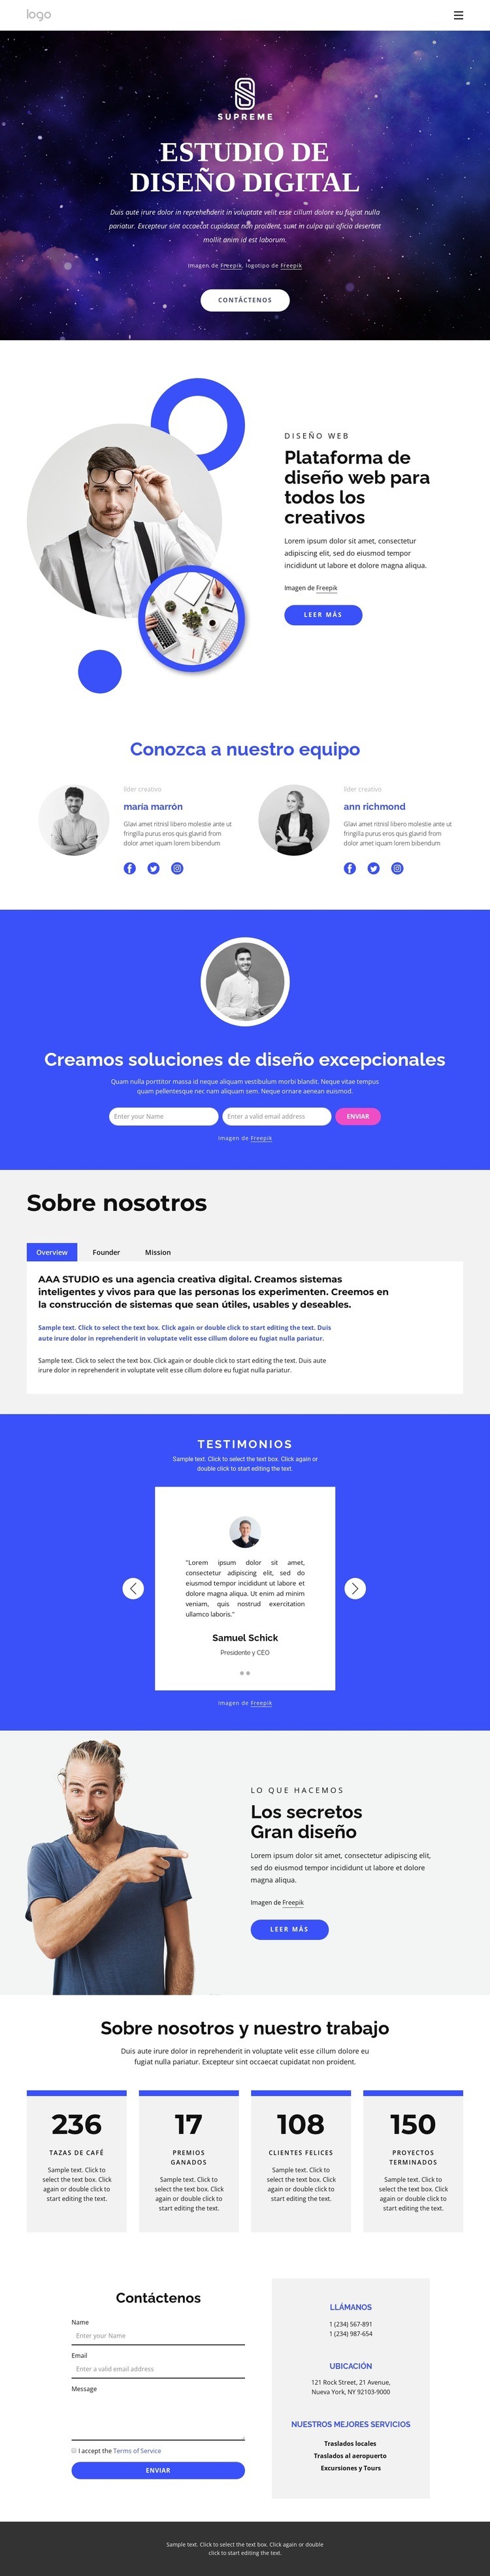 agencia de diseño digital Diseño de páginas web